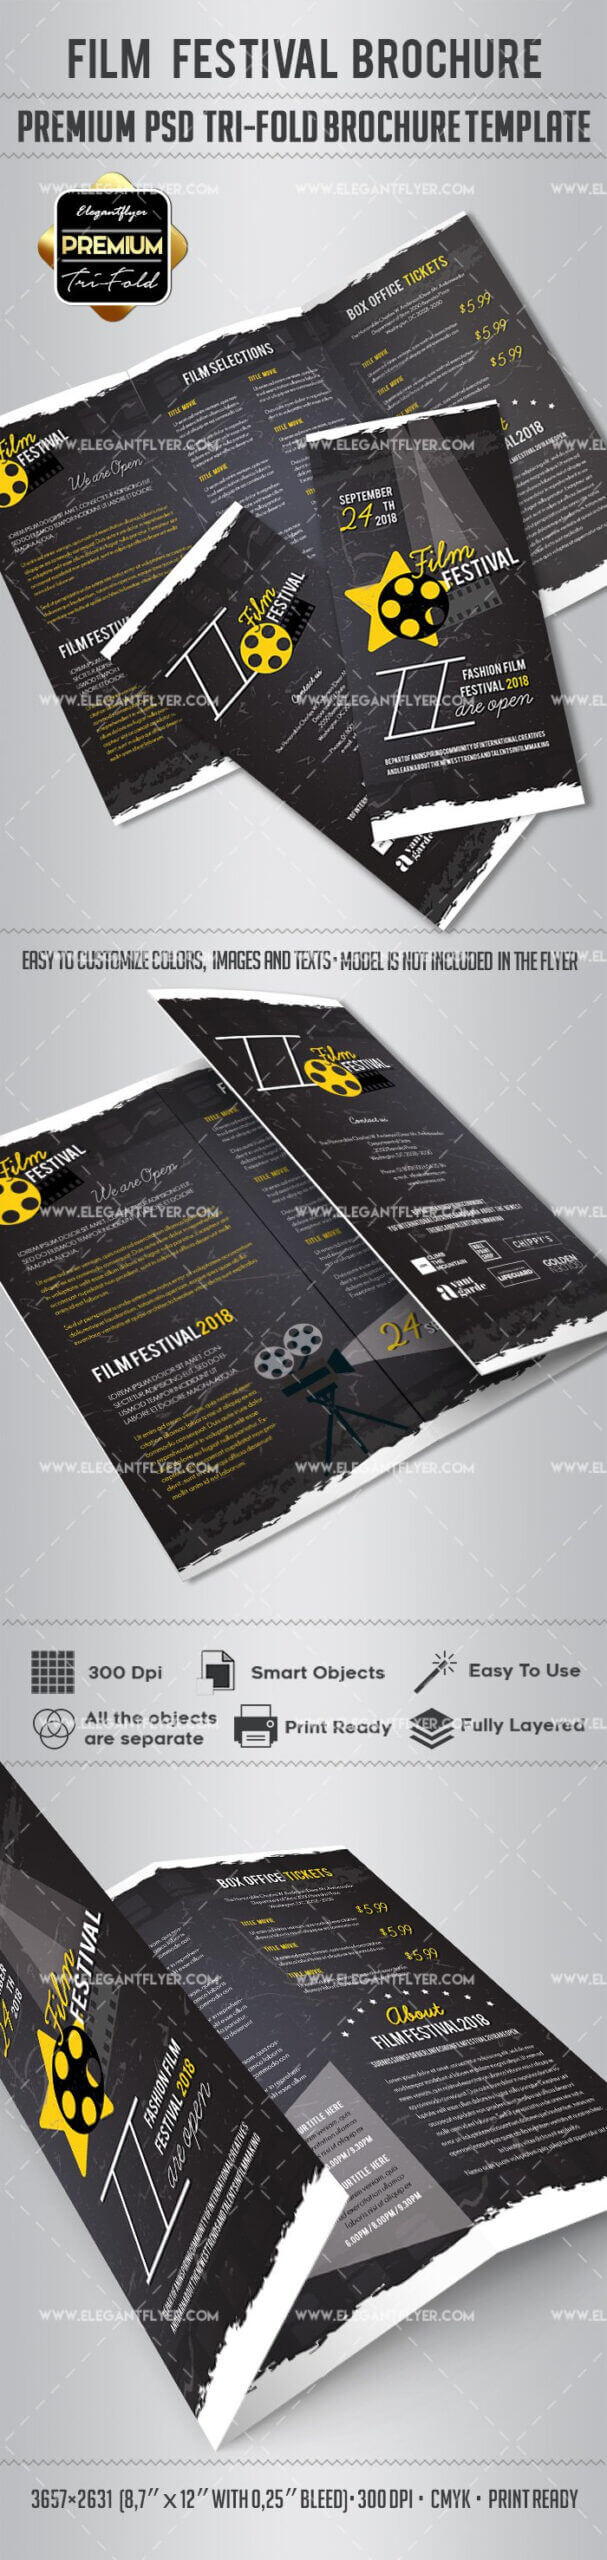 Film Festival Brochure Design Inside Film Festival Brochure Template